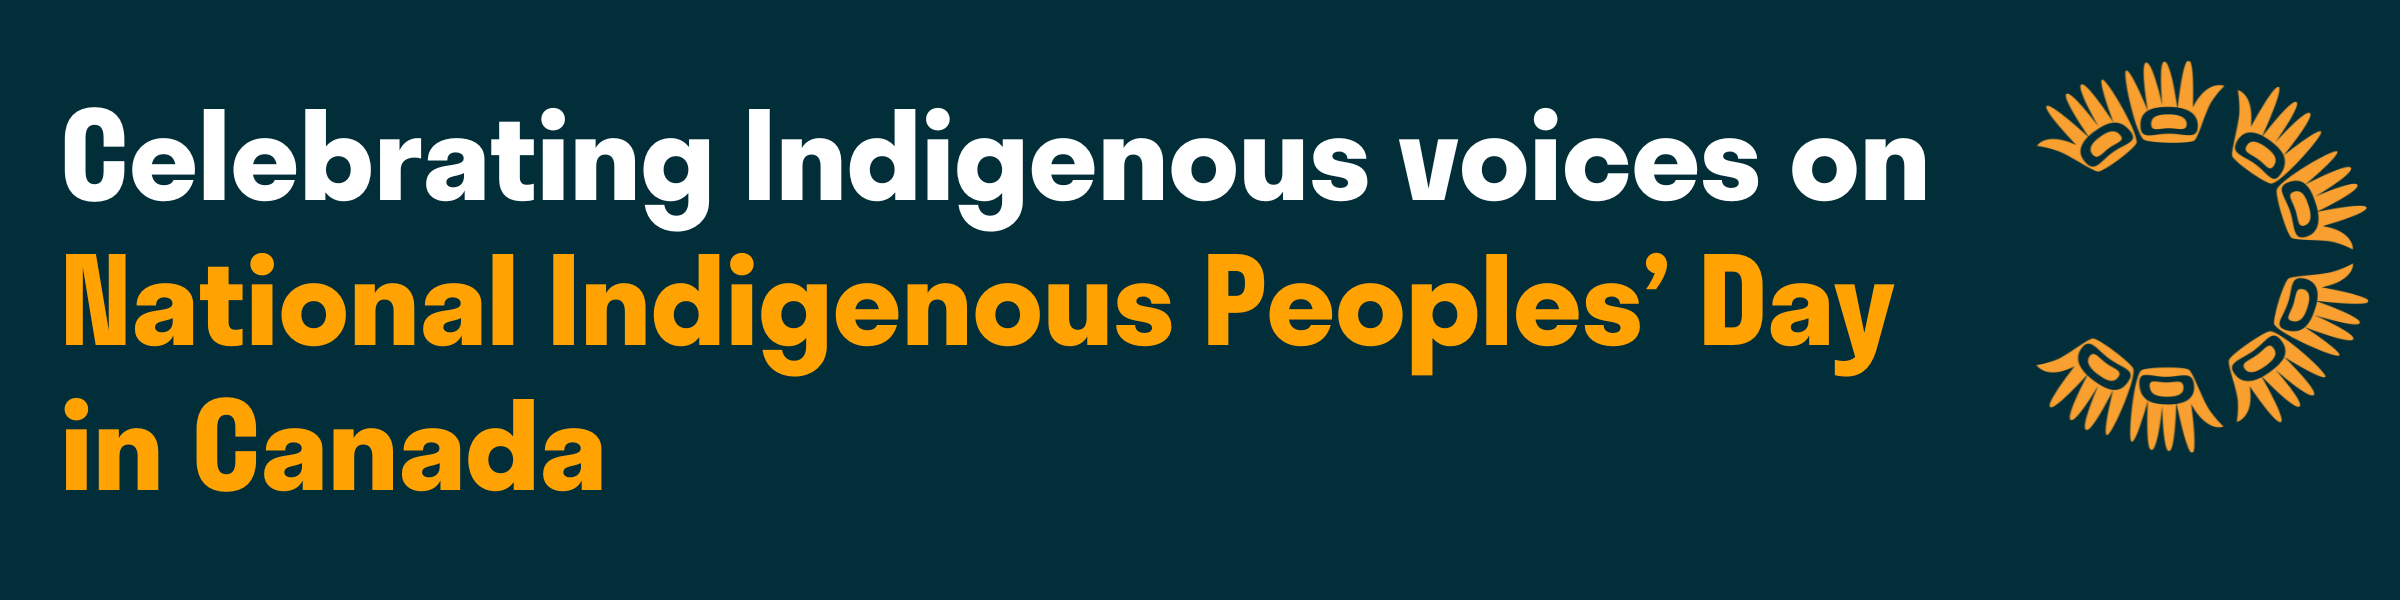 Web banner for Celebrating Indigenous Leadership